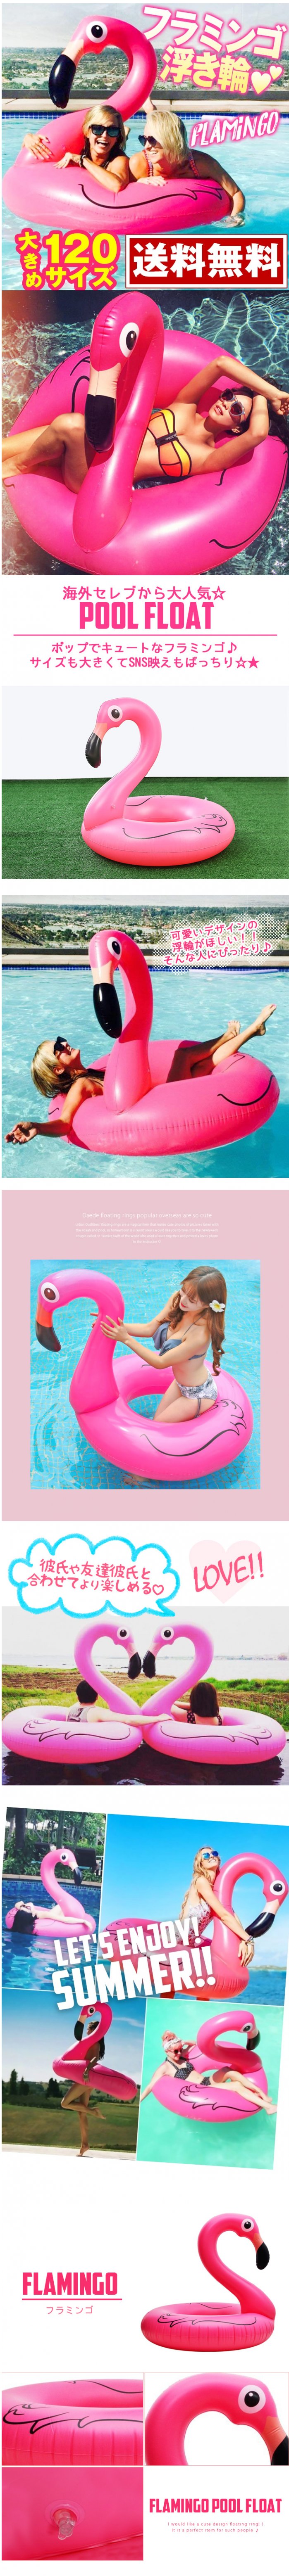 浮き輪 インスタ 大人 フロート 浮輪 うきわ フラミンゴ ピンク ピンク色 大きい 海 プール ビーチ ナイトプール おしゃれ かわいい 可愛い 楽しい おもしろグッズ 海外 旅行 大人用 1cm セレブ モデル 愛用 巨大 インスタ映え 目立つ 派手 Y